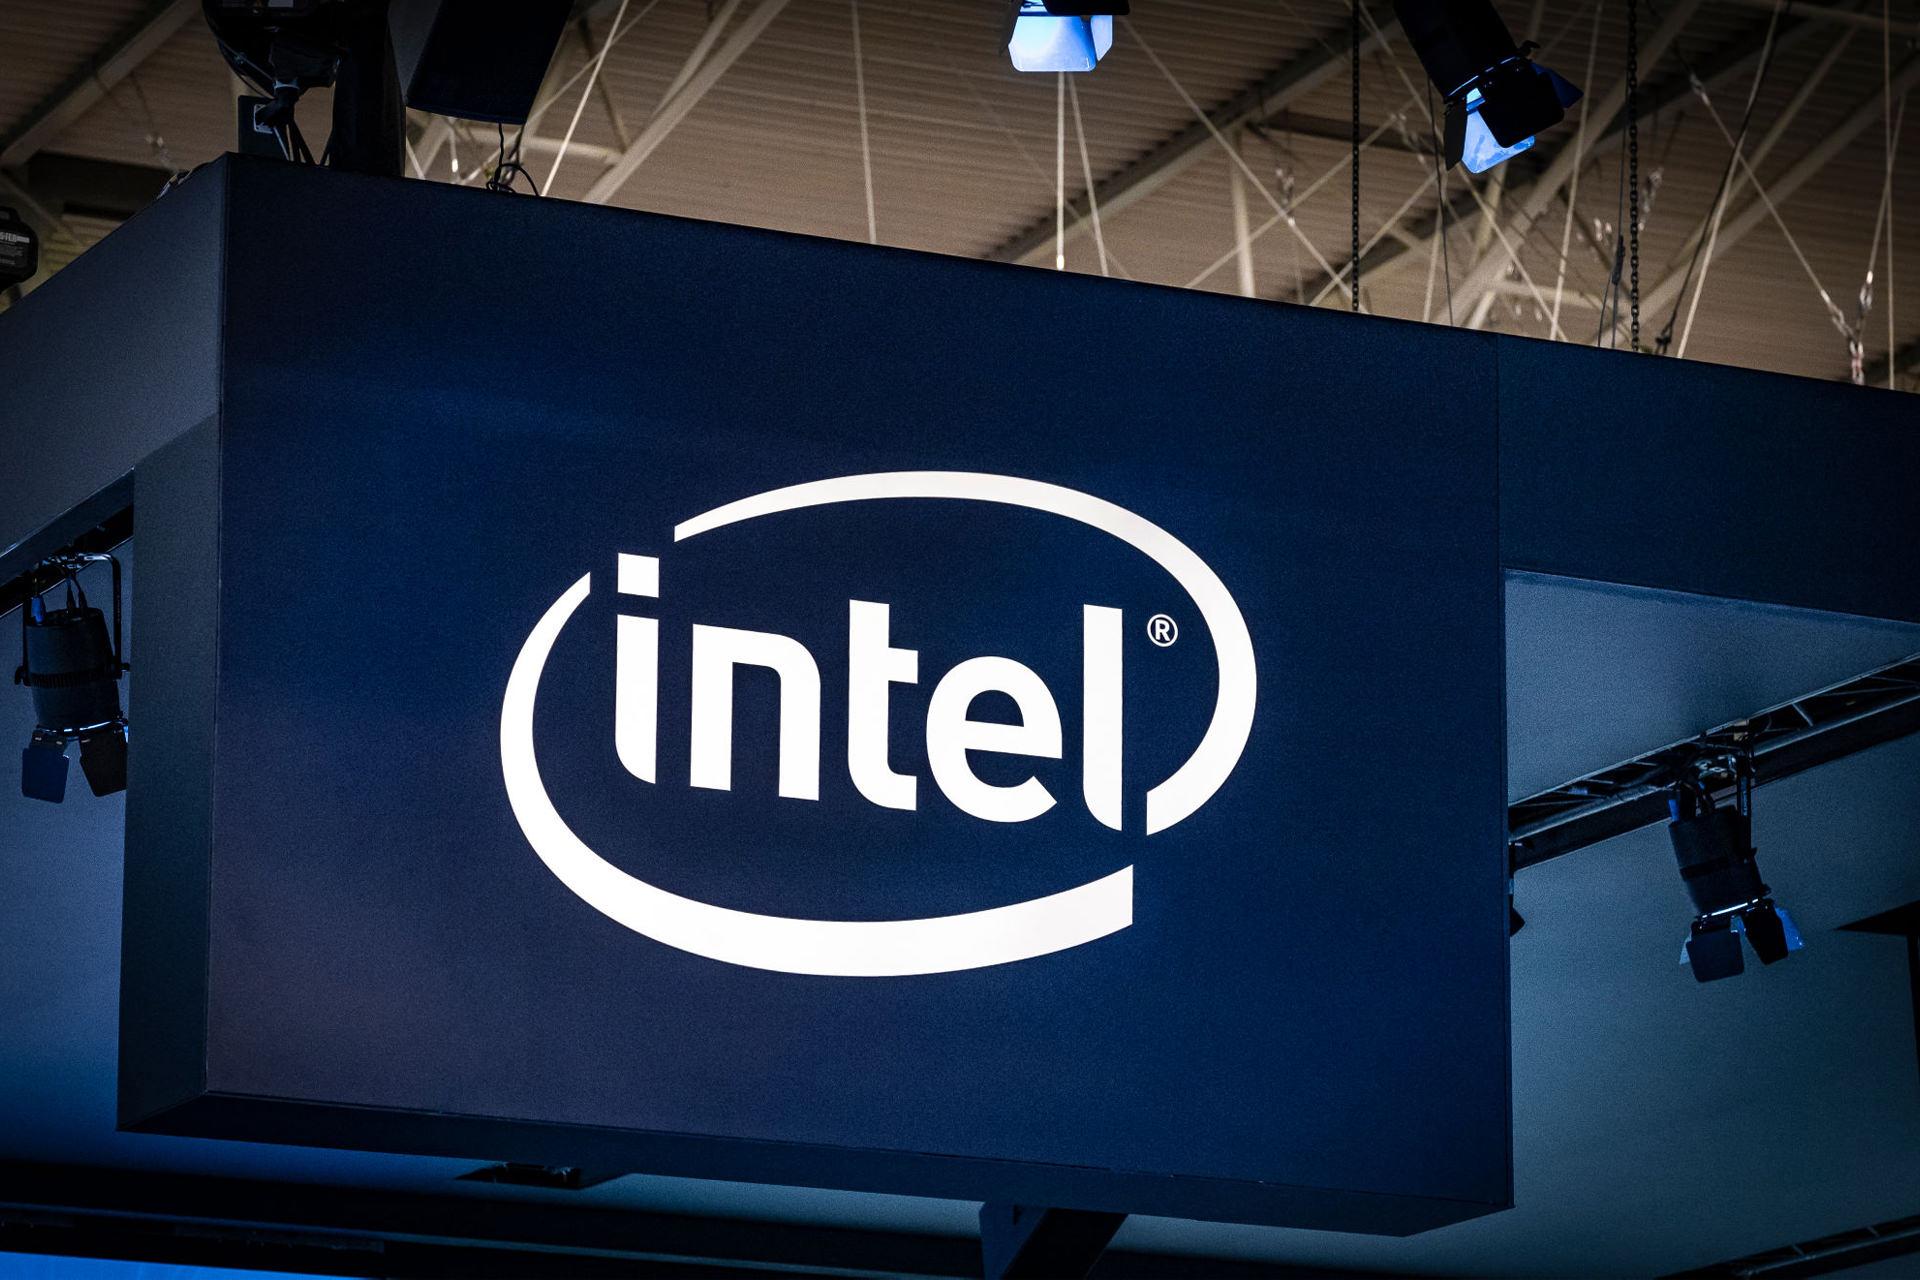 لوگو اینتل / Intel در داخل محیط سربسته